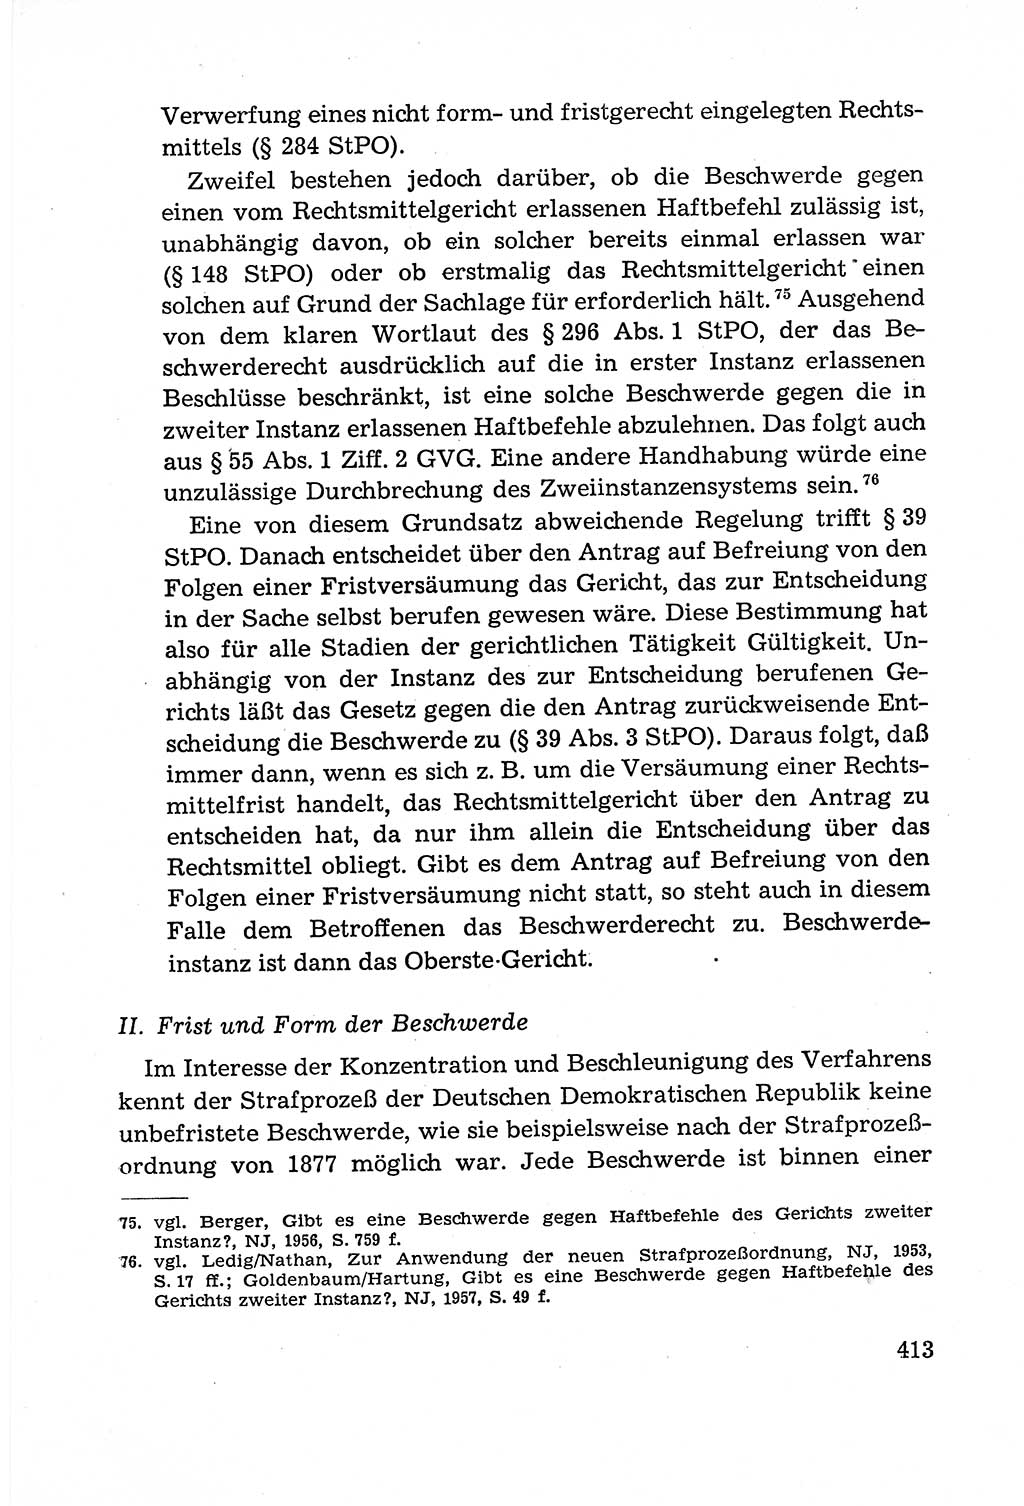 Leitfaden des Strafprozeßrechts der Deutschen Demokratischen Republik (DDR) 1959, Seite 413 (LF StPR DDR 1959, S. 413)